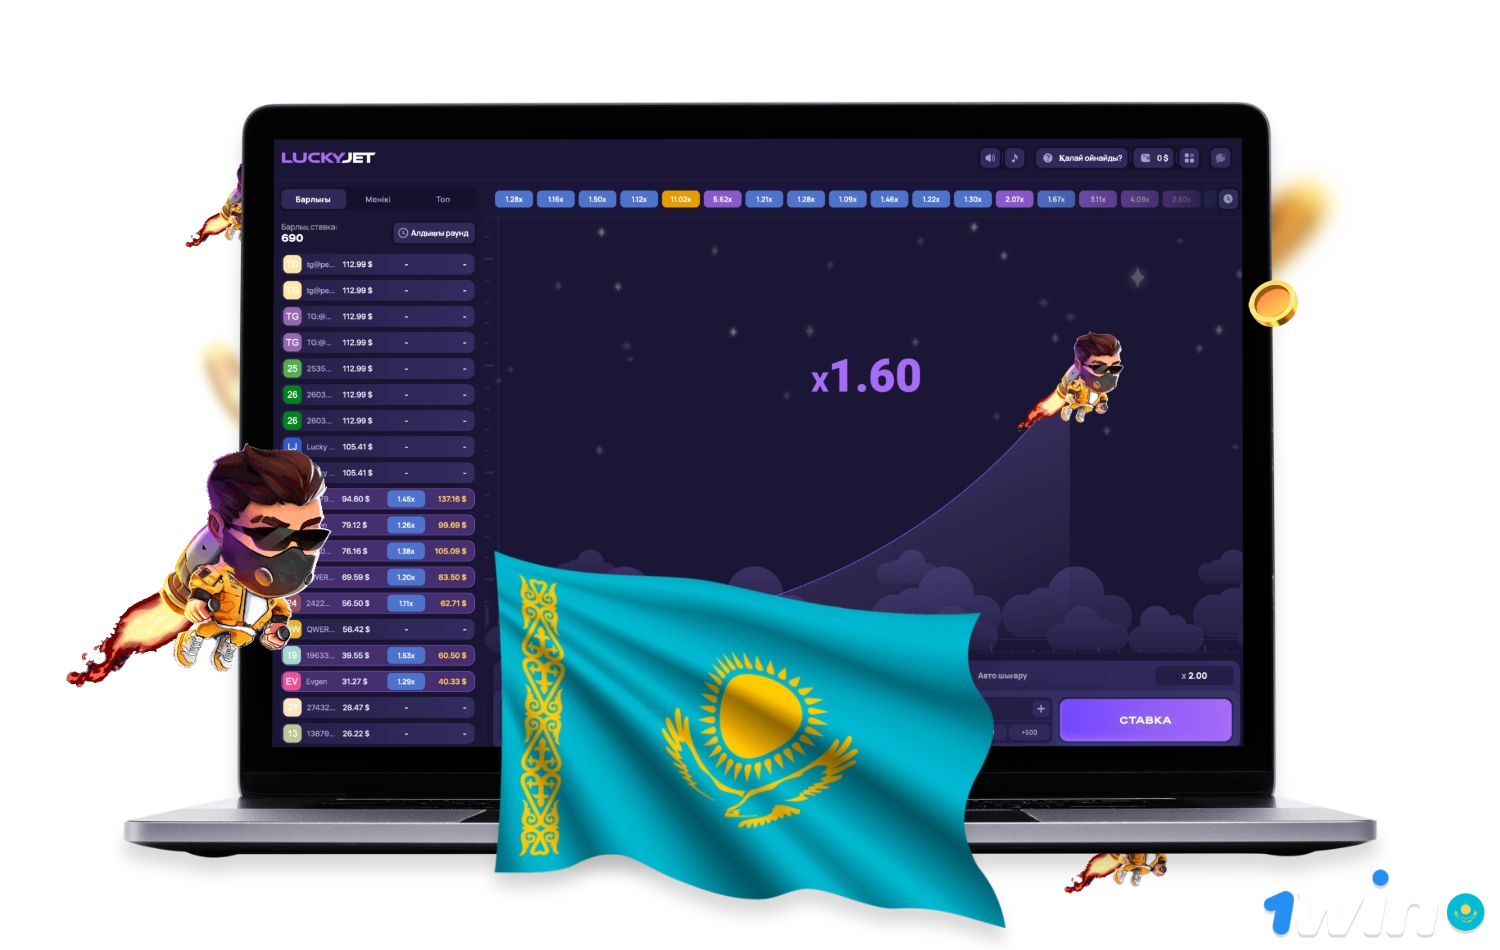 Казахстанские пользователи 1win могут попробовать свои силы в популярной игре Lucky Jet, доступной как на сайте, так и в мобильном приложении